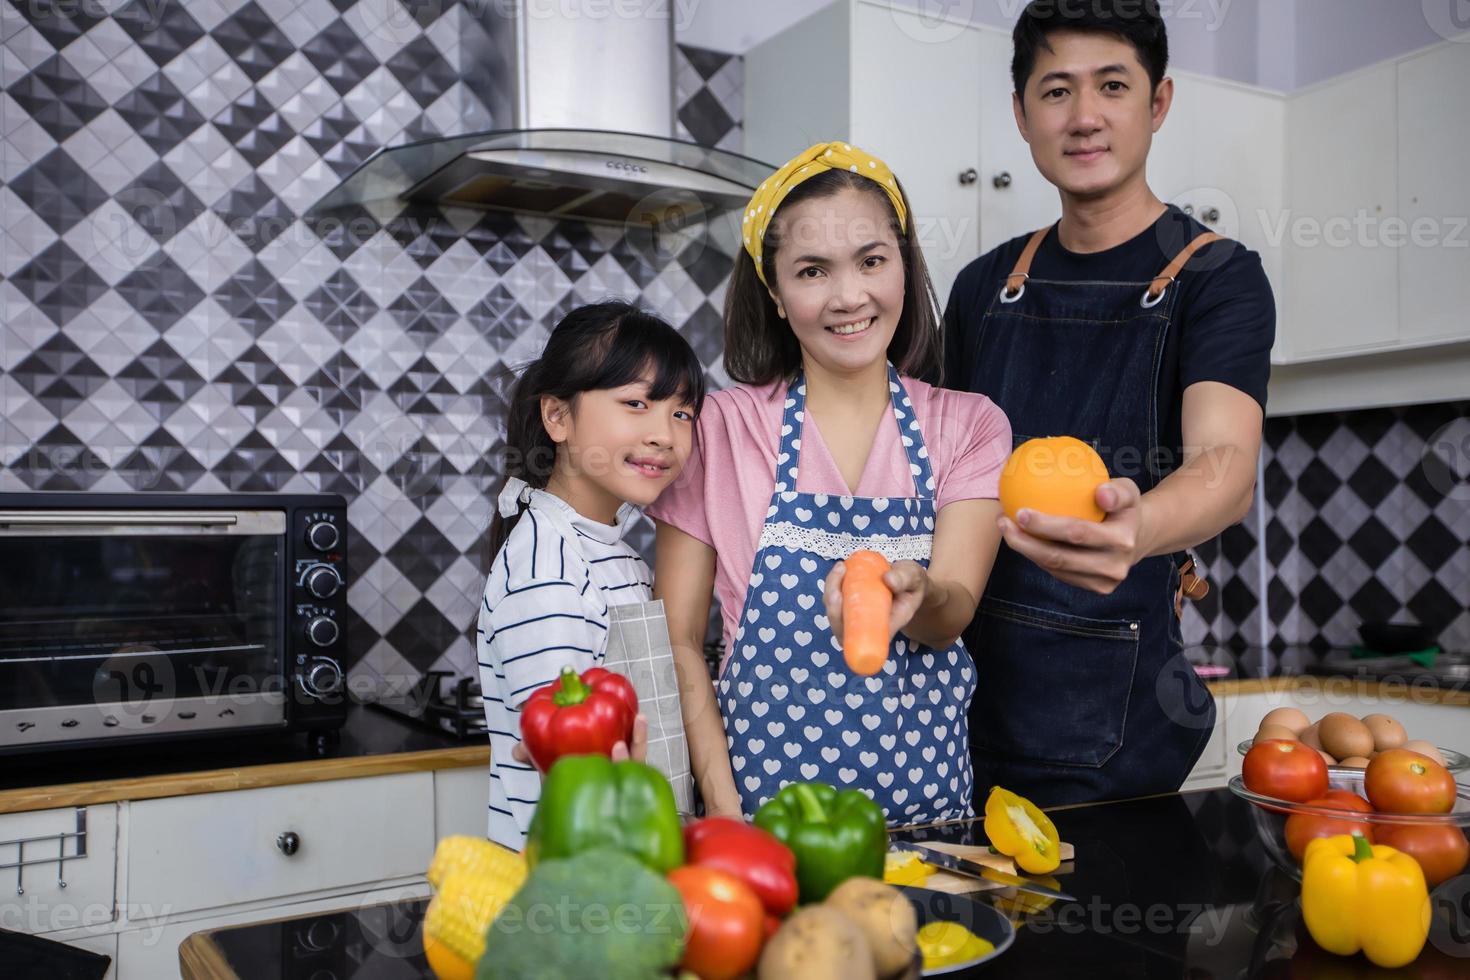 Aziatische gezinnen koken en ouders leren hun dochters om thuis in de keuken te koken. gezinsactiviteiten op vakantie en gelukkig in recreatieconcept foto